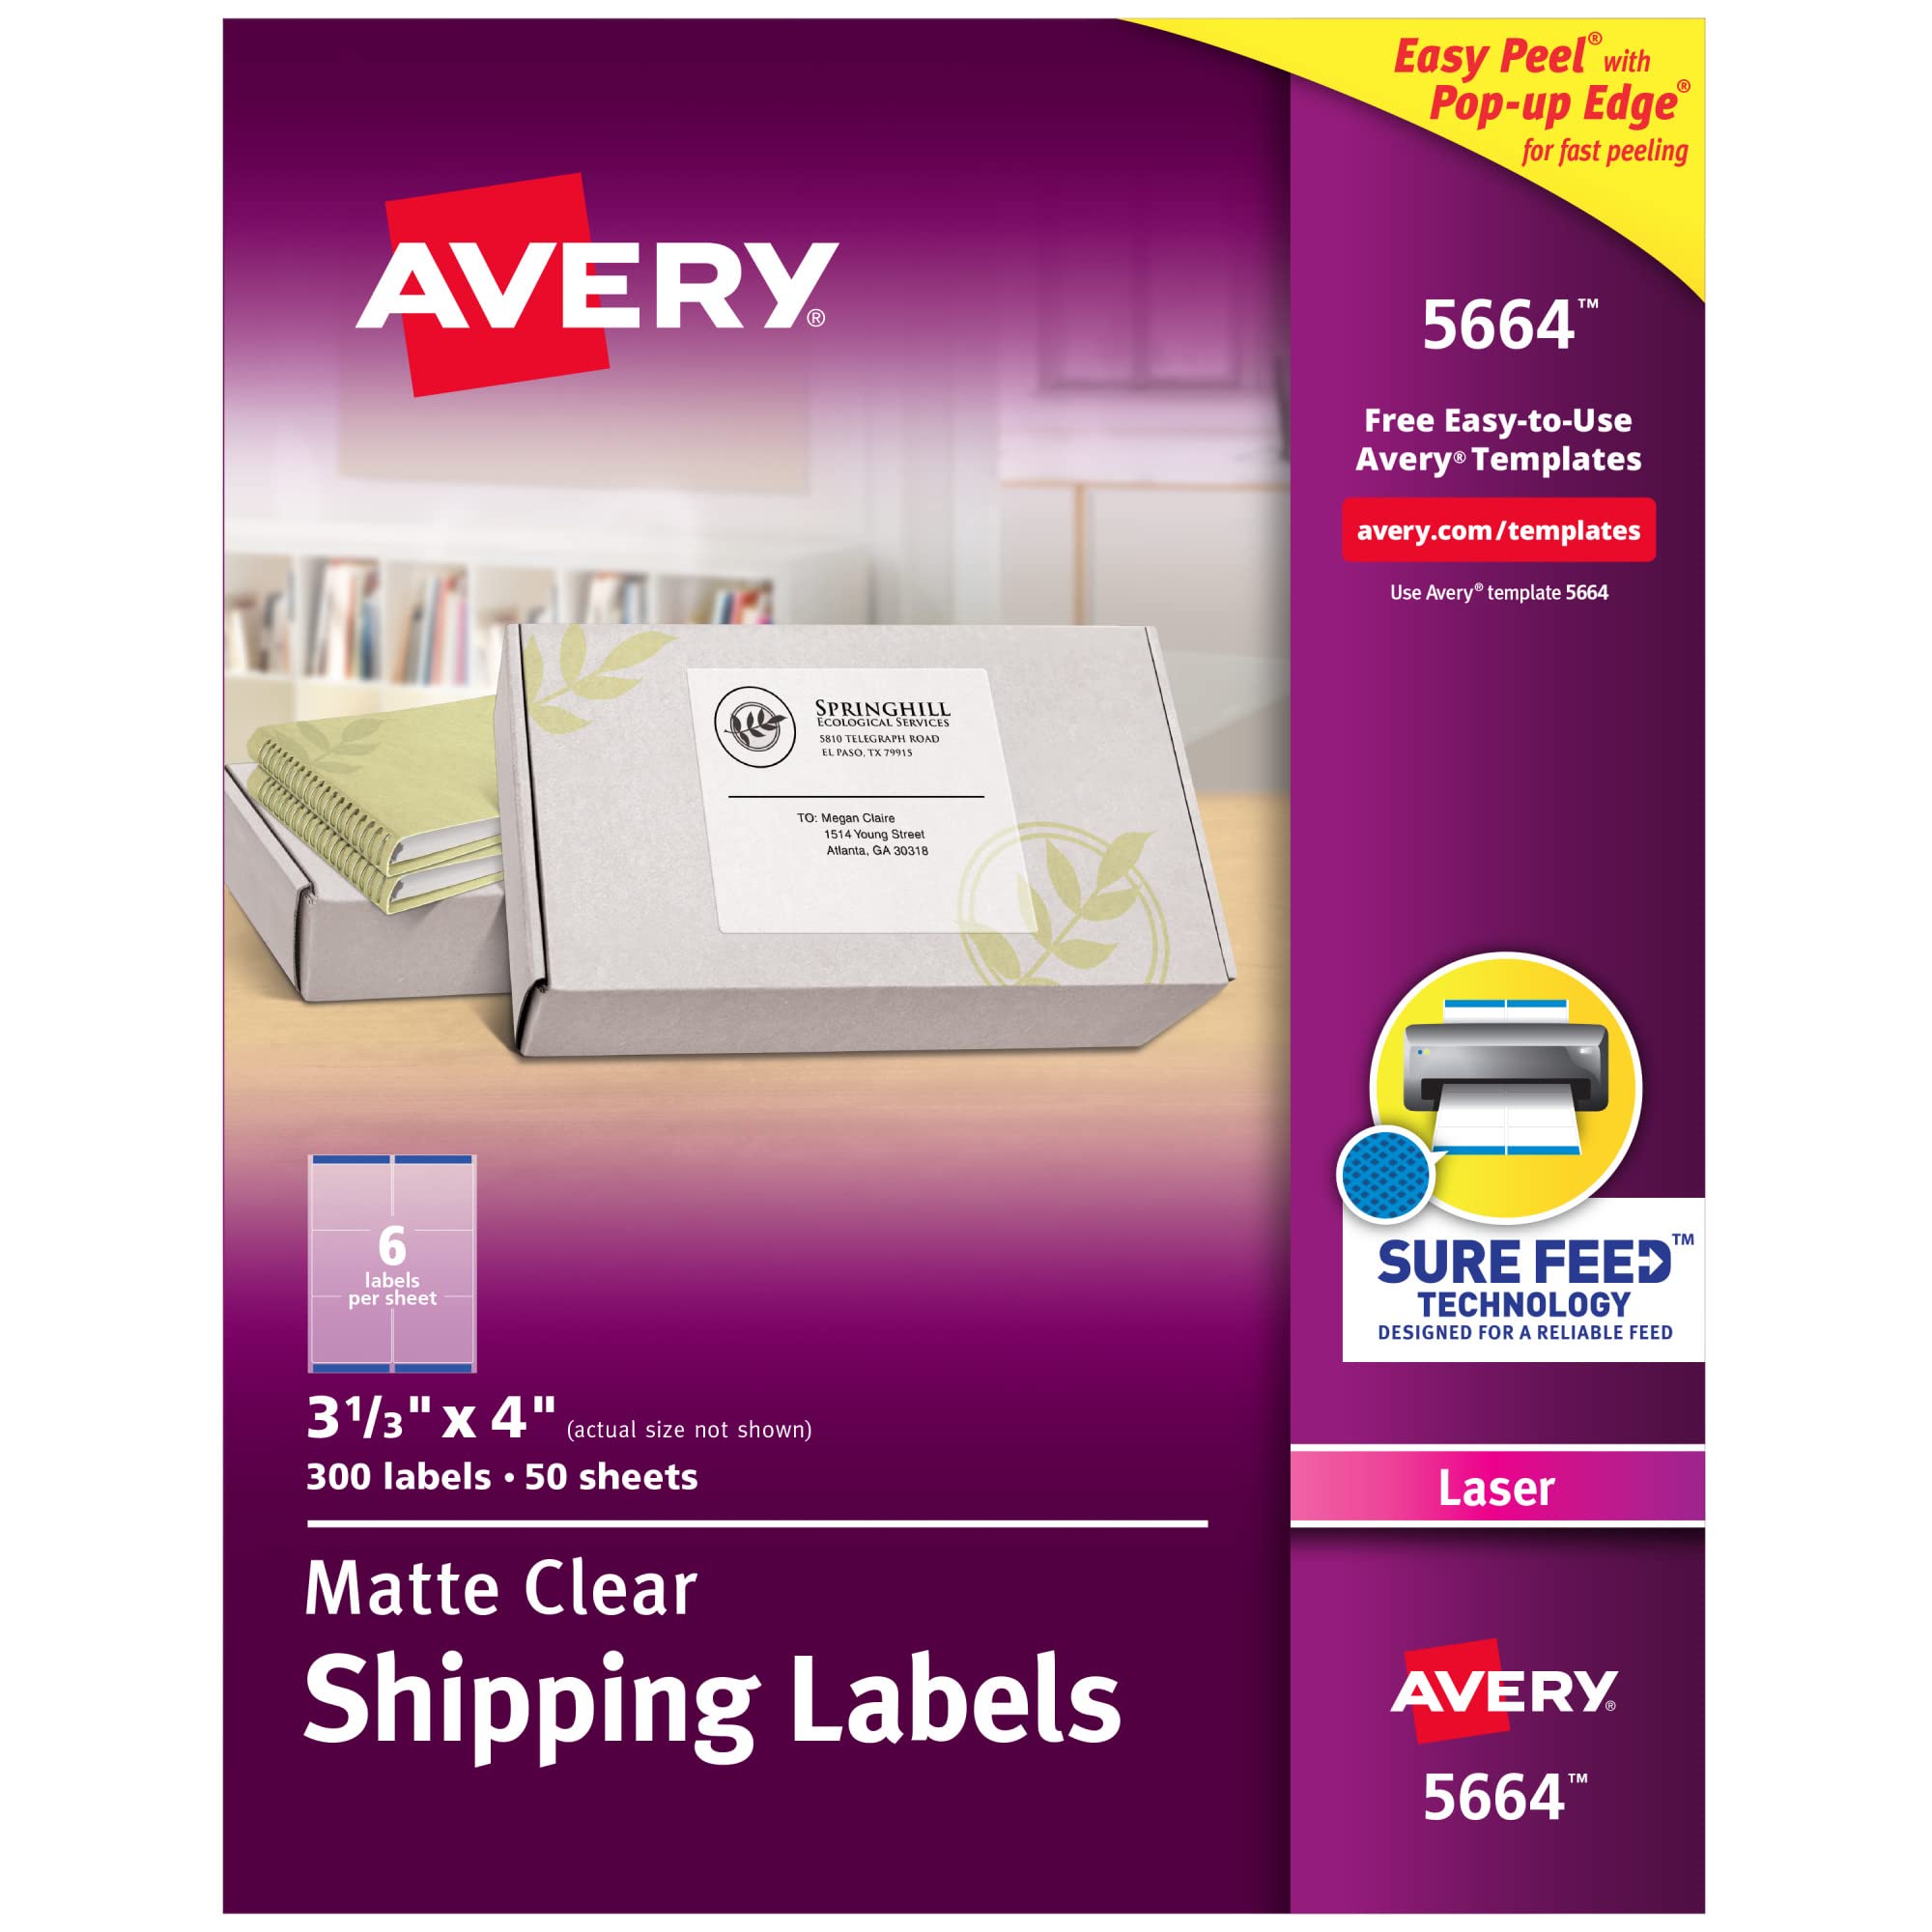 Avery レーザープリンター用マットフロストクリアアドレスラベル、3-1/3 インチ x 4 インチ、300...